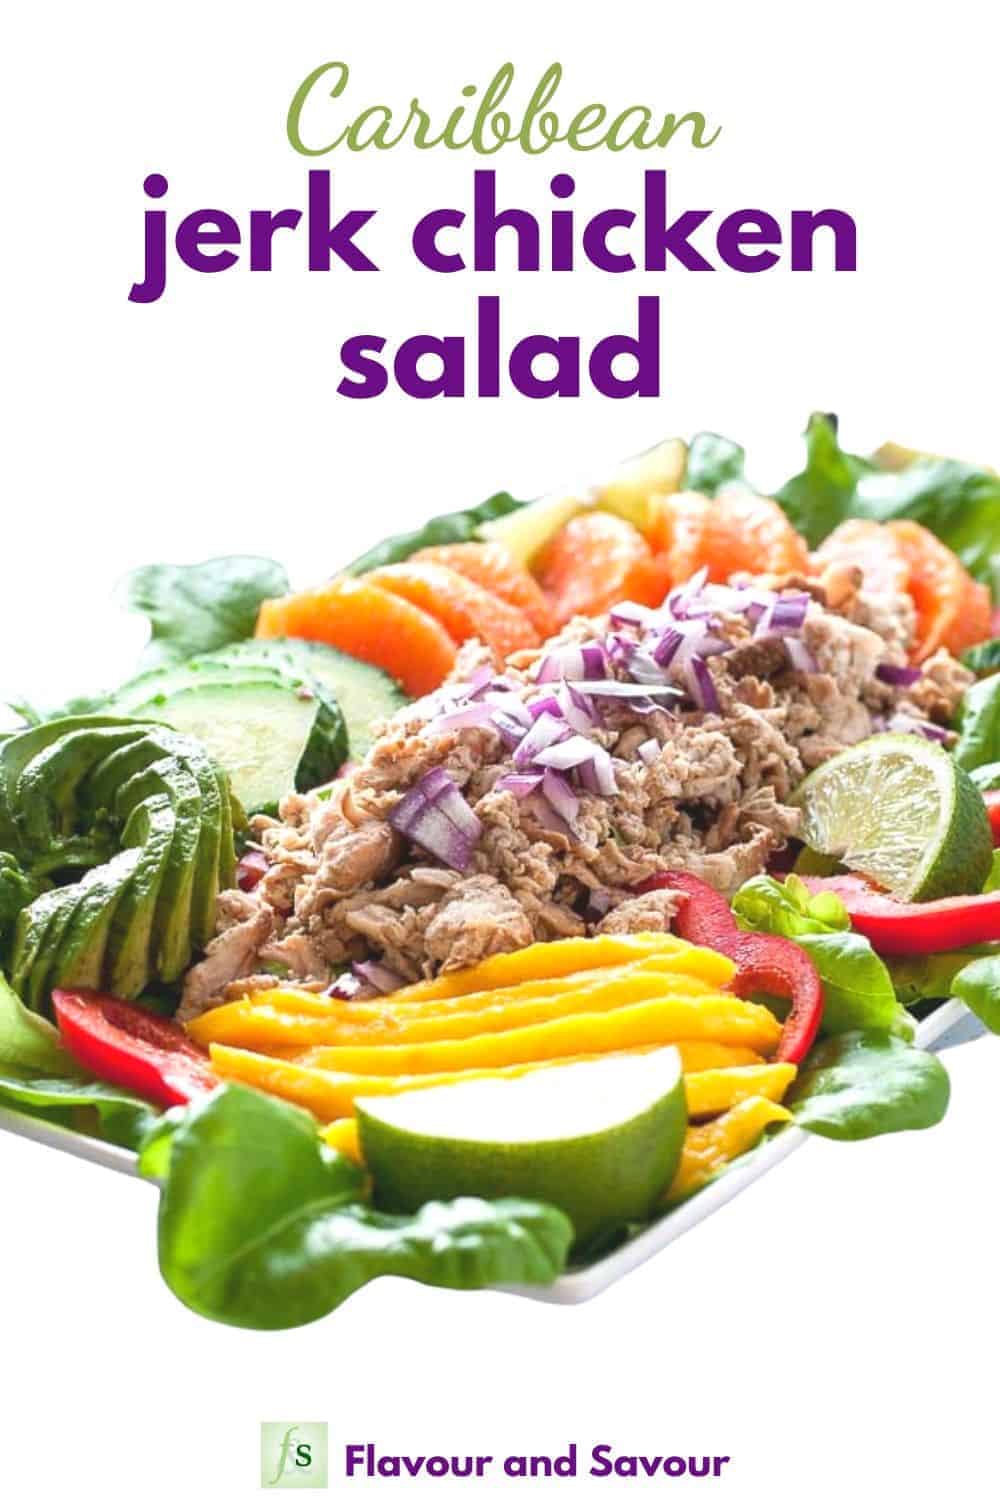 jerk chicken salad